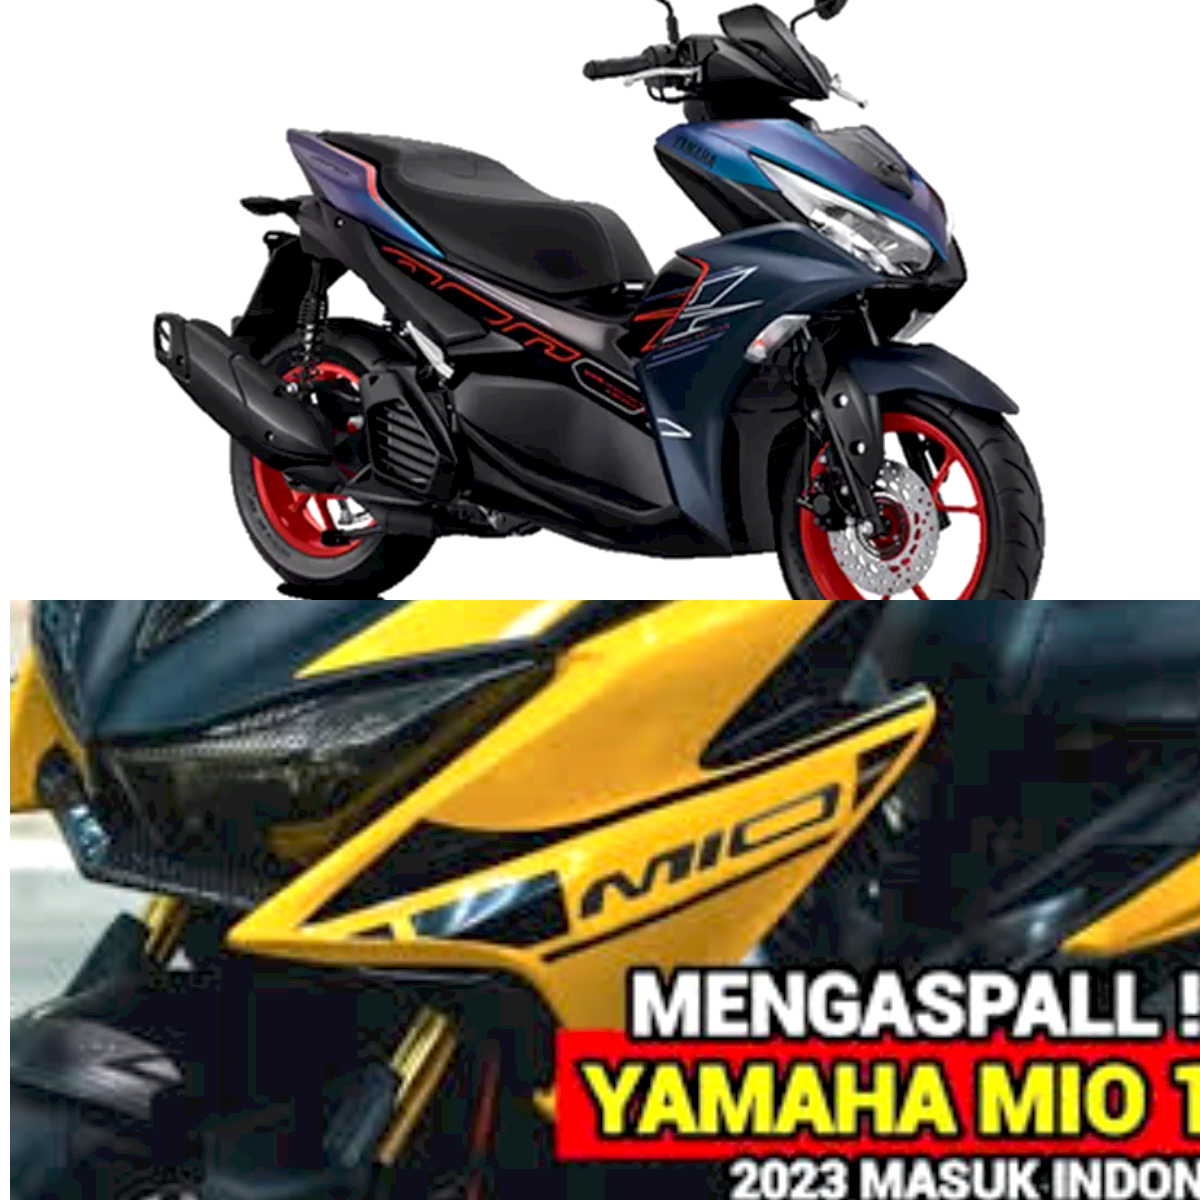 Inovasi Terbaru Yamaha Mio 155, Lebih Banyak Fitur dan Lebih Banyak Keunggulan!